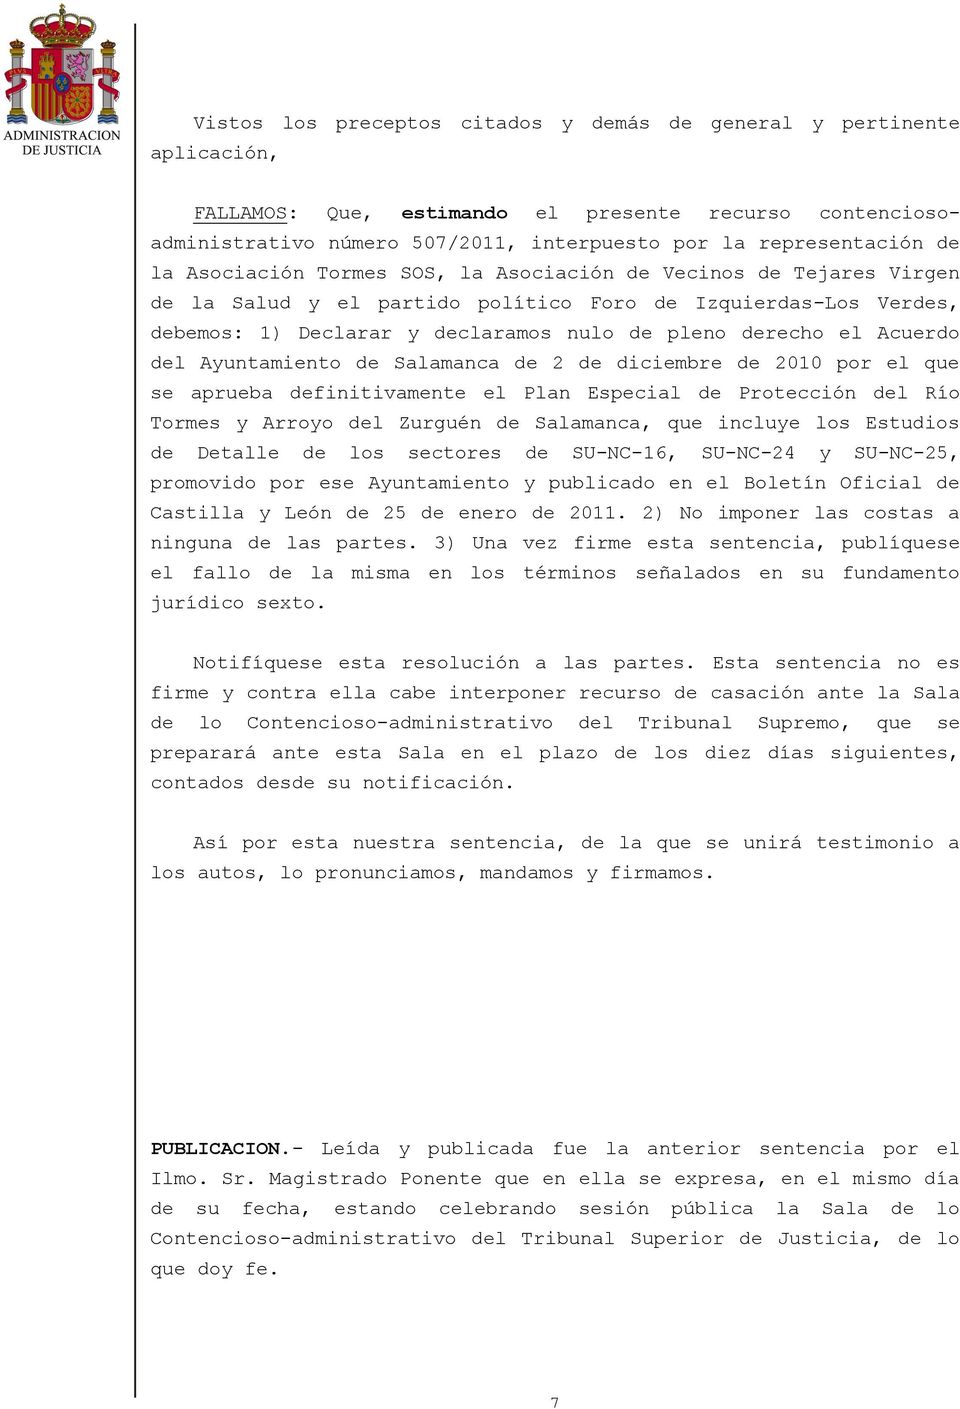 Acuerdo del Ayuntamiento de Salamanca de 2 de diciembre de 2010 por el que se aprueba definitivamente el Plan Especial de Protección del Río Tormes y Arroyo del Zurguén de Salamanca, que incluye los